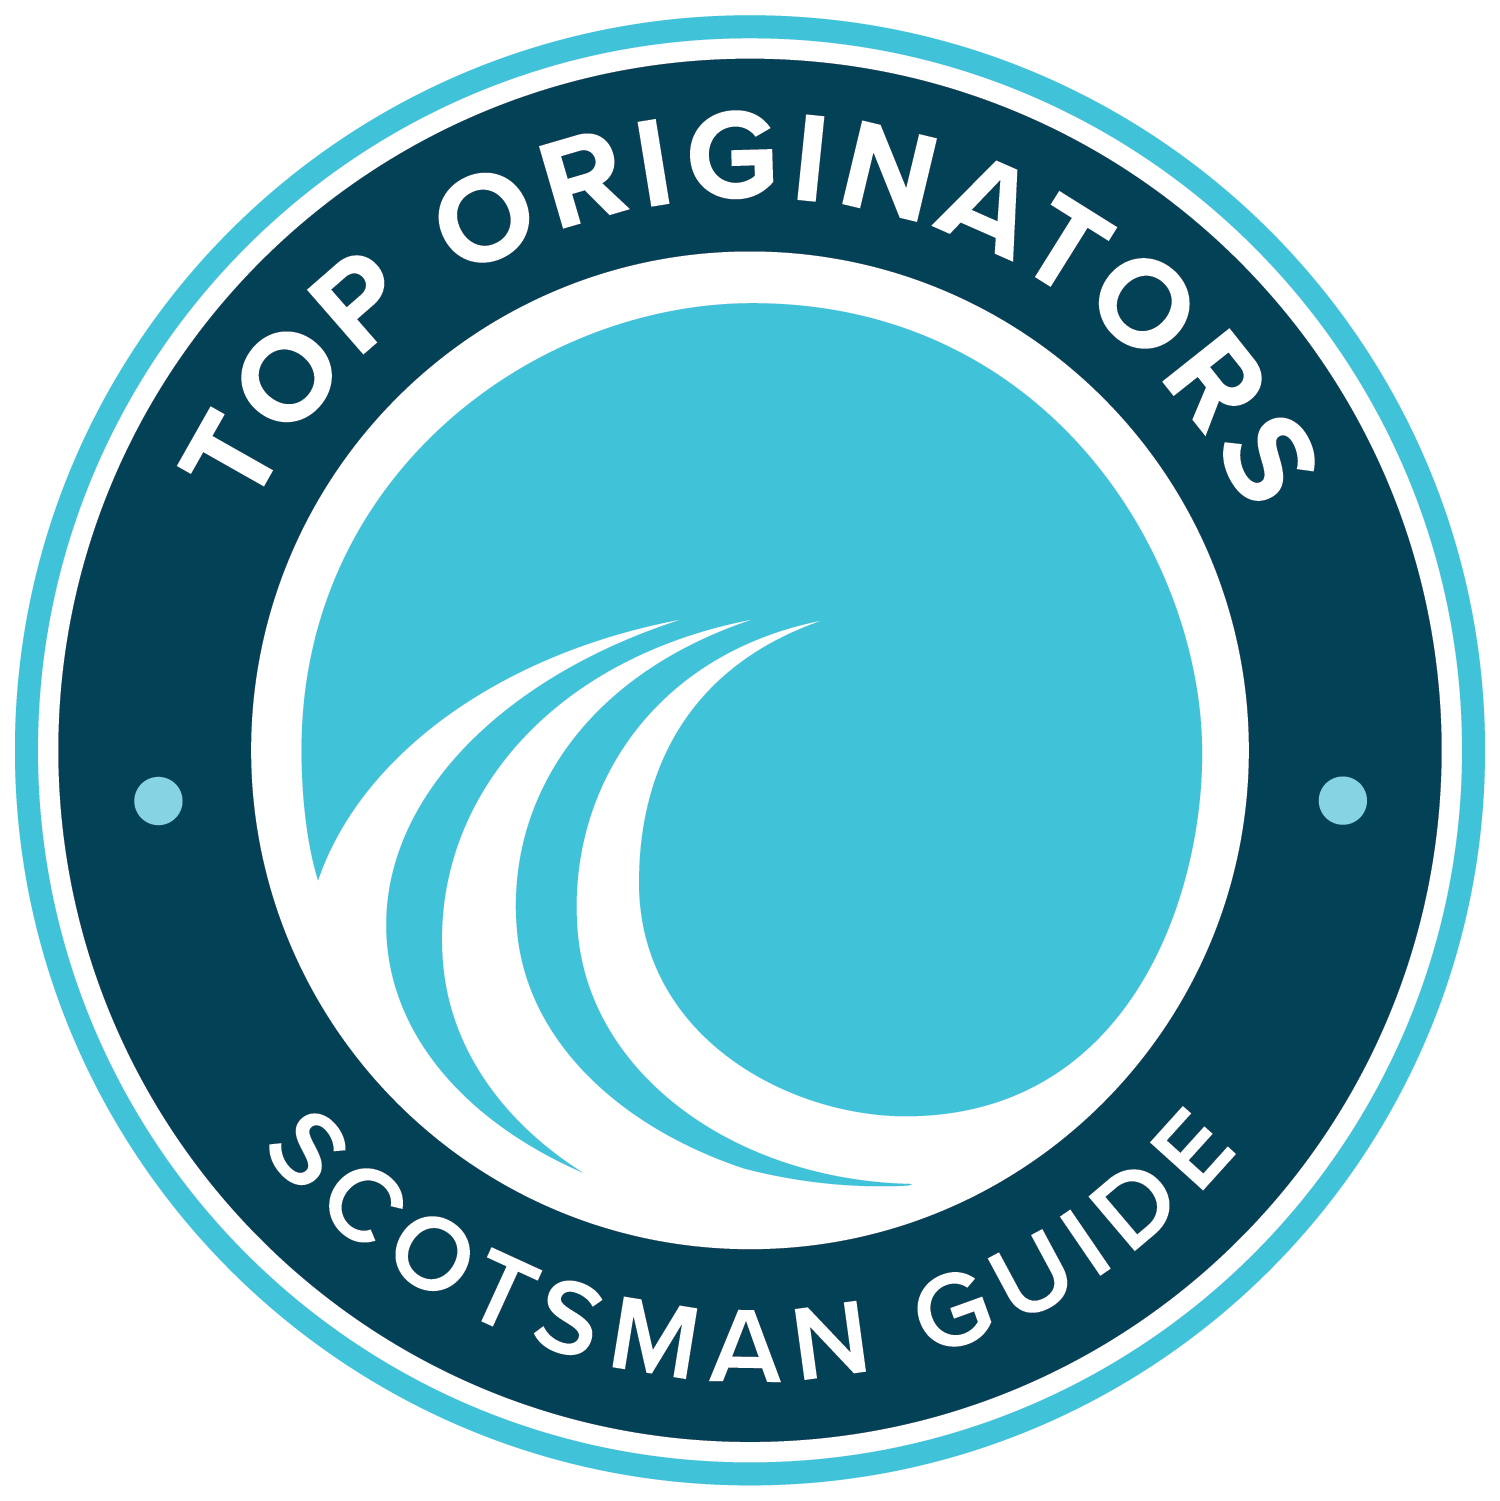 2022 Top 1% Mortgage Originator in America, Scotsman Guide